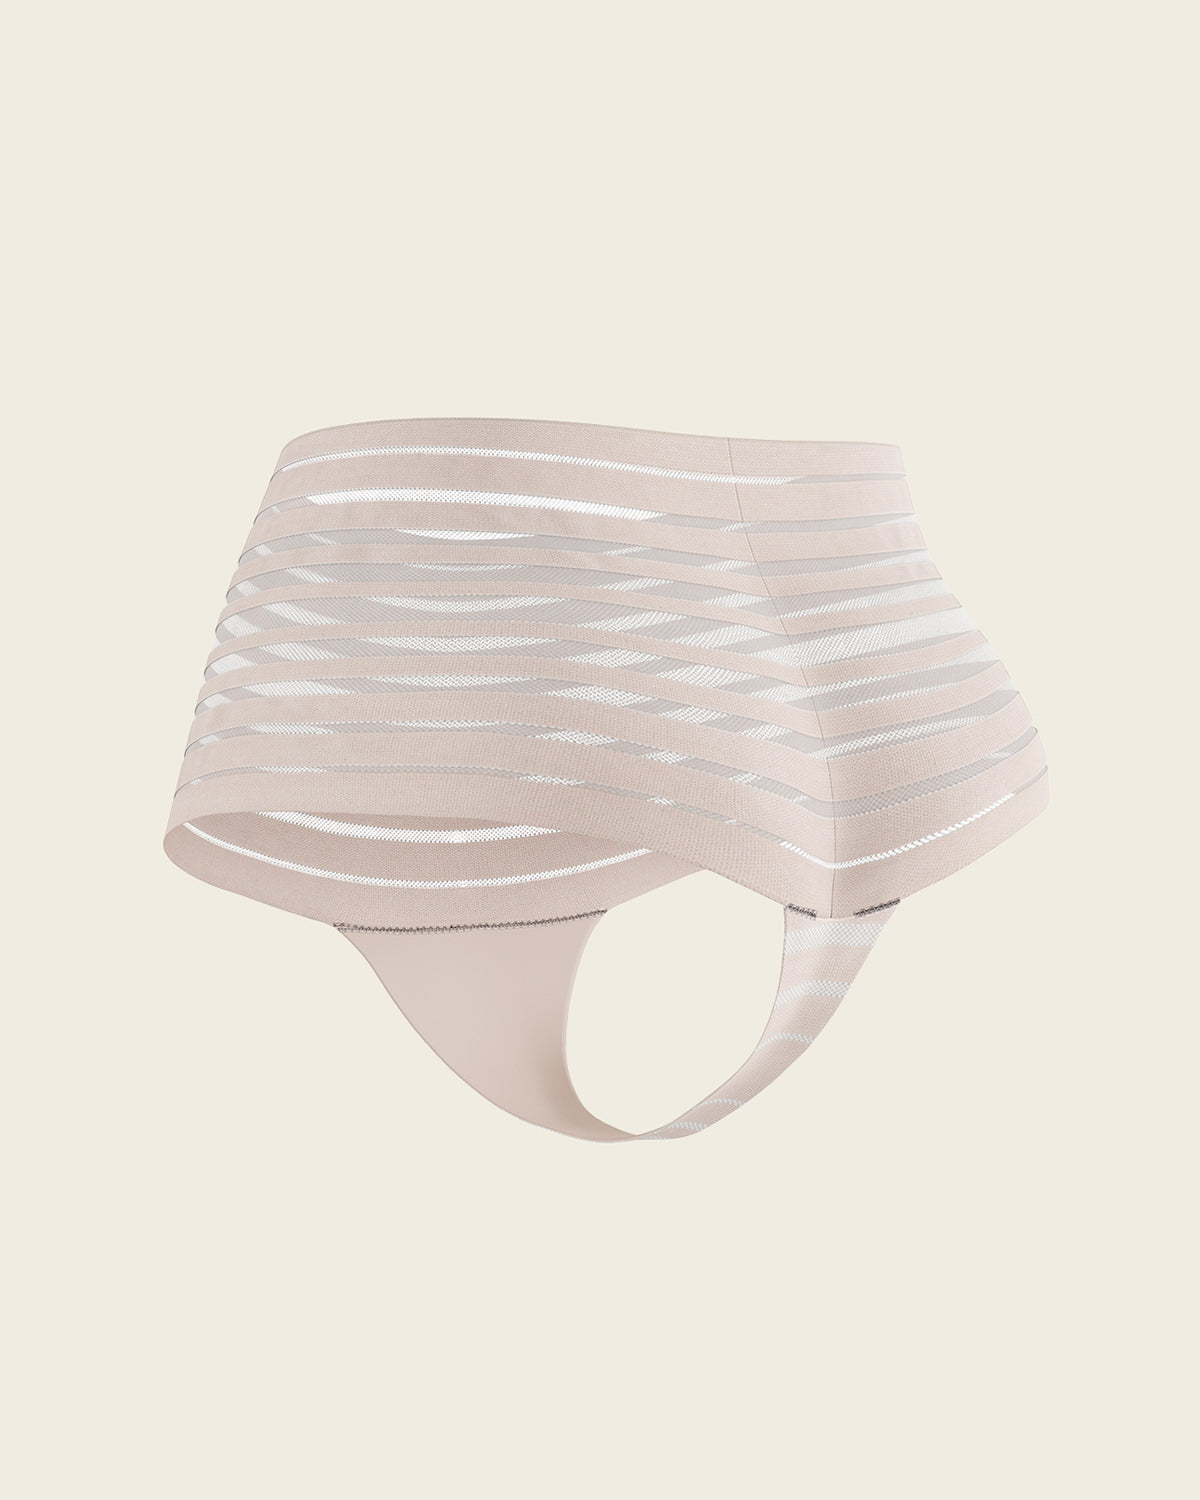 Leonisa Lace Stripe Hiphugger Panty 012921 - ShopStyle Panties